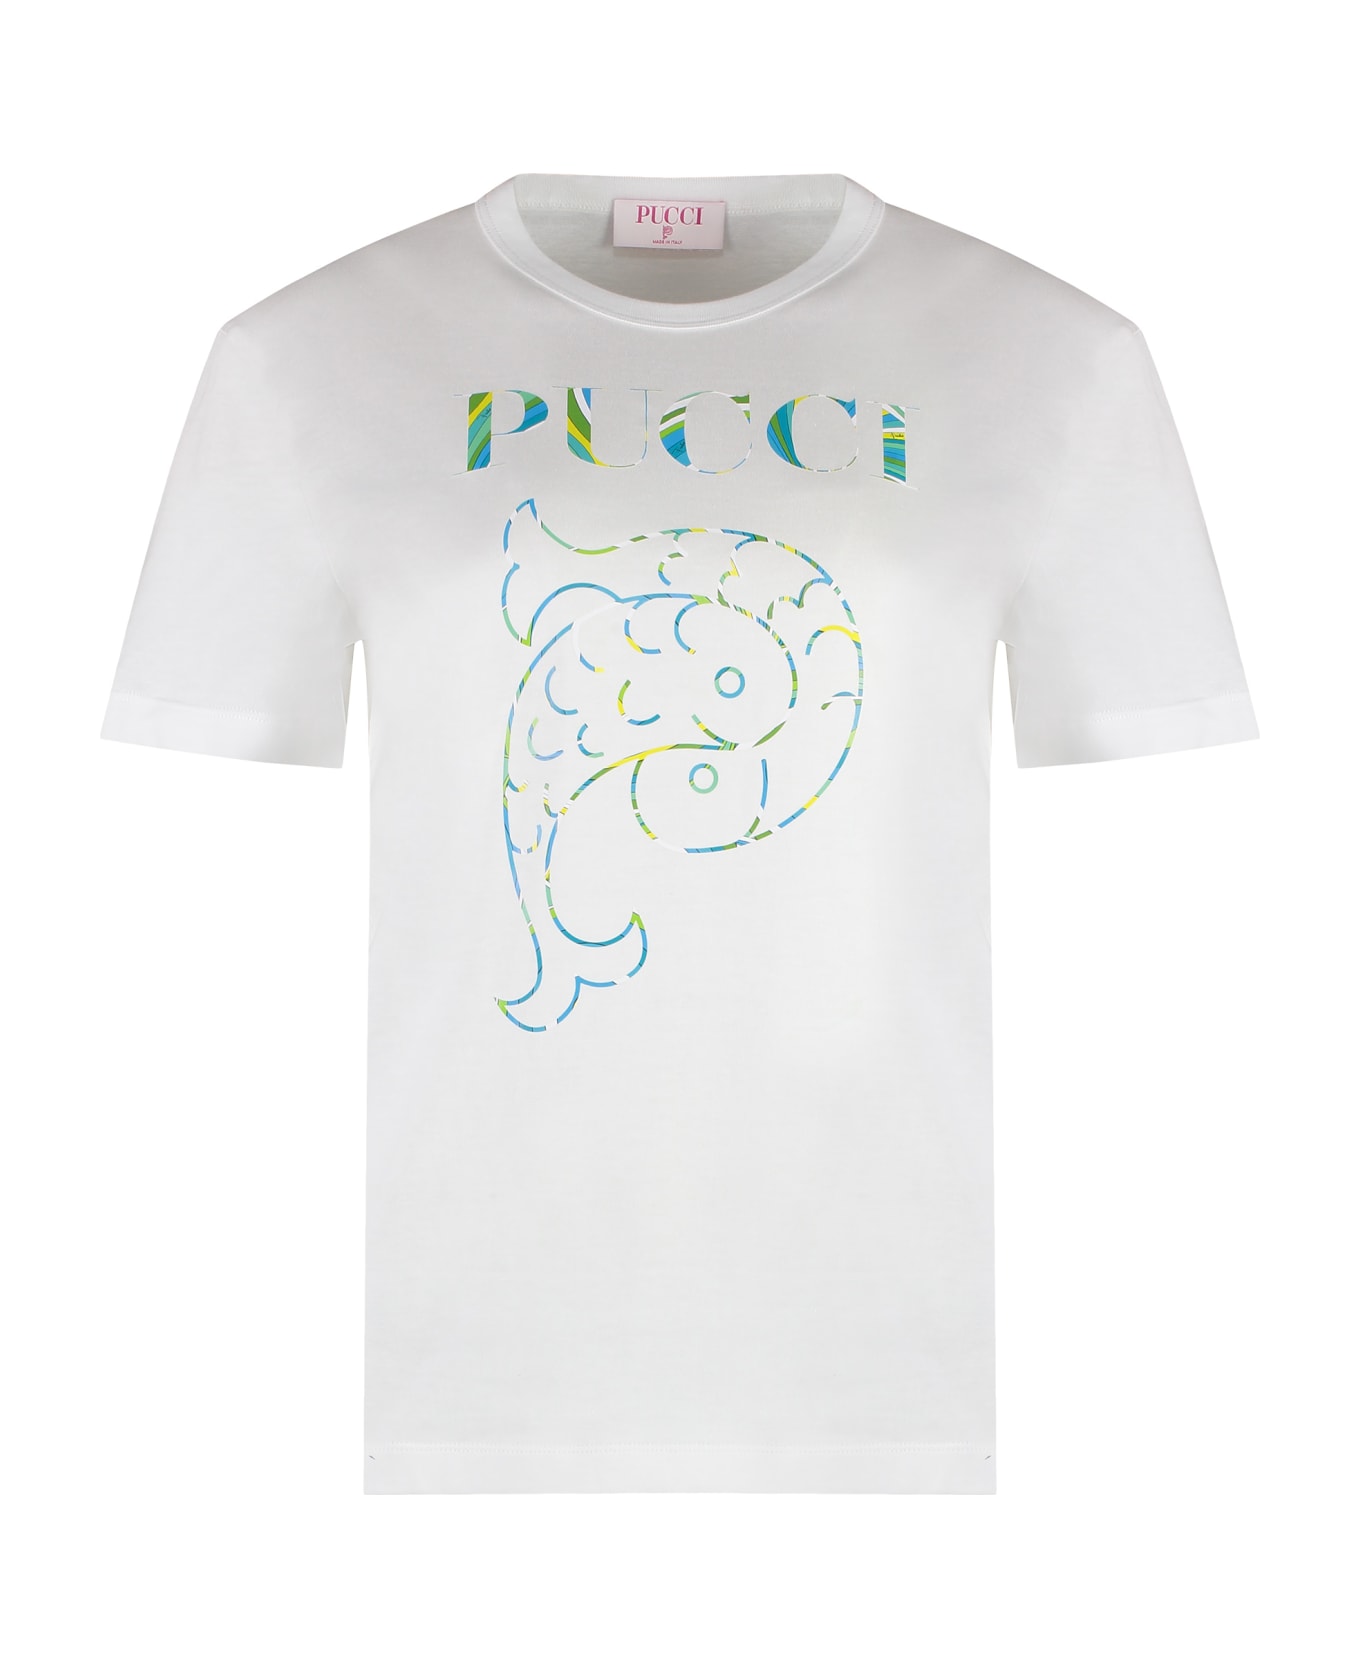 Pucci Logo Print T-shirt - White Tシャツ